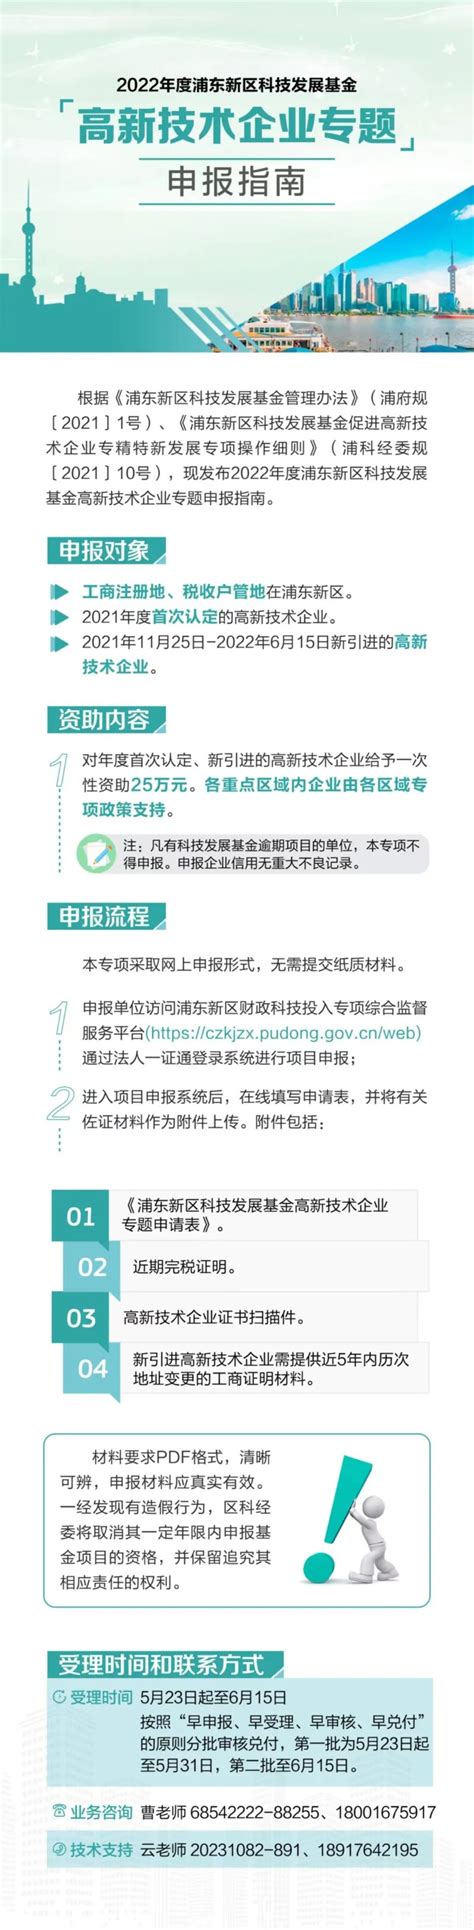 2021年度浦东新区创新型孵化器毕业企业名单公示 - 知乎